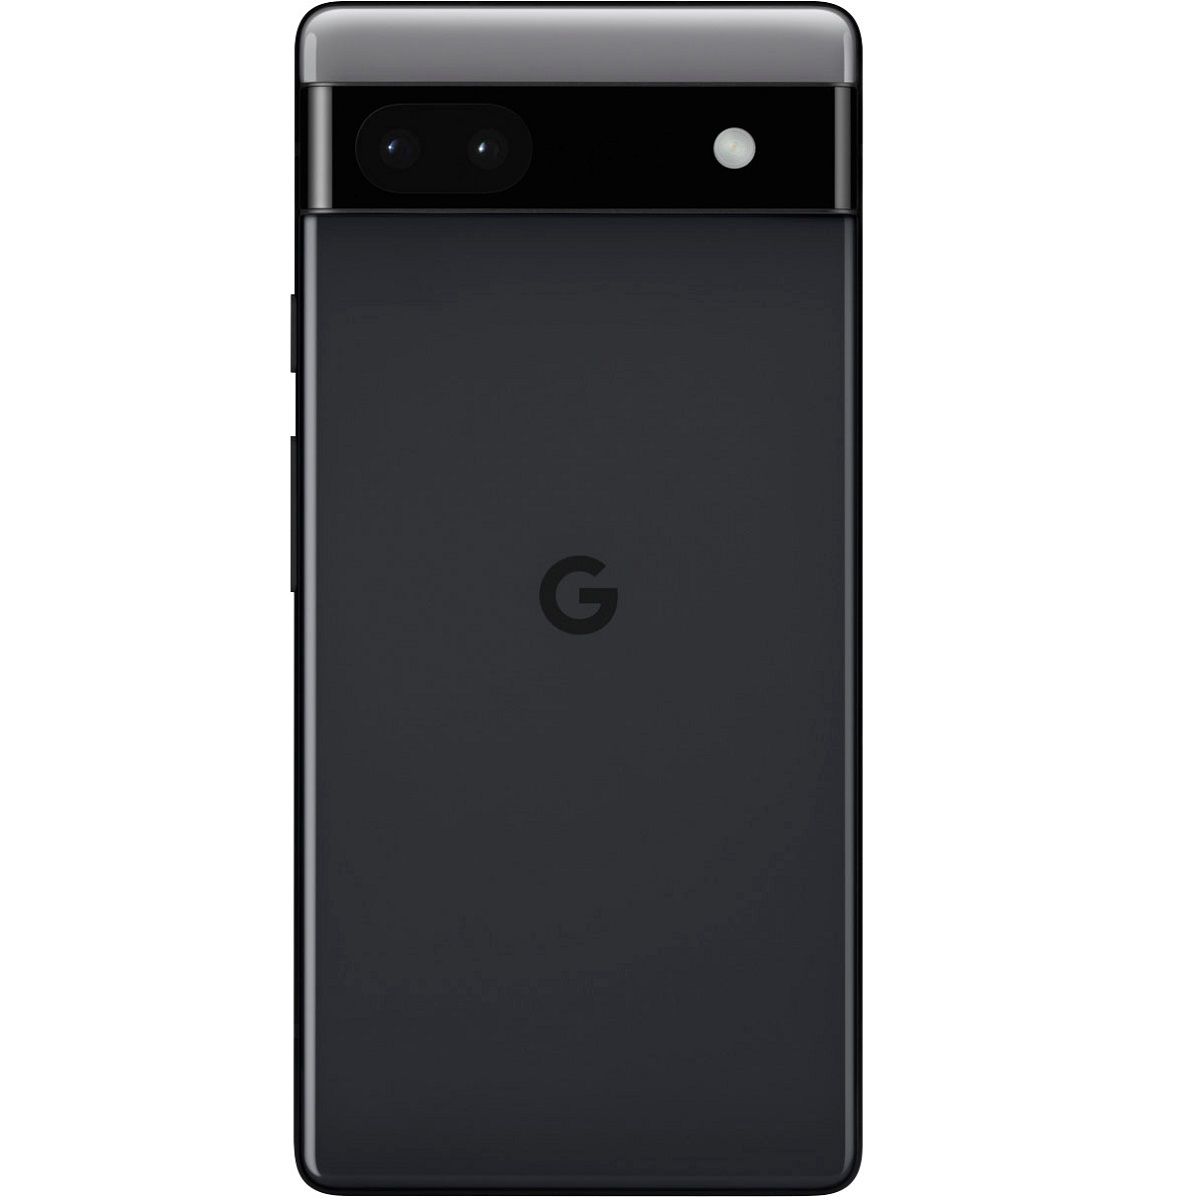 Google Pixel 6a 6GB Ram 128GB Rom Dual Sim Charcoal Black - Best 